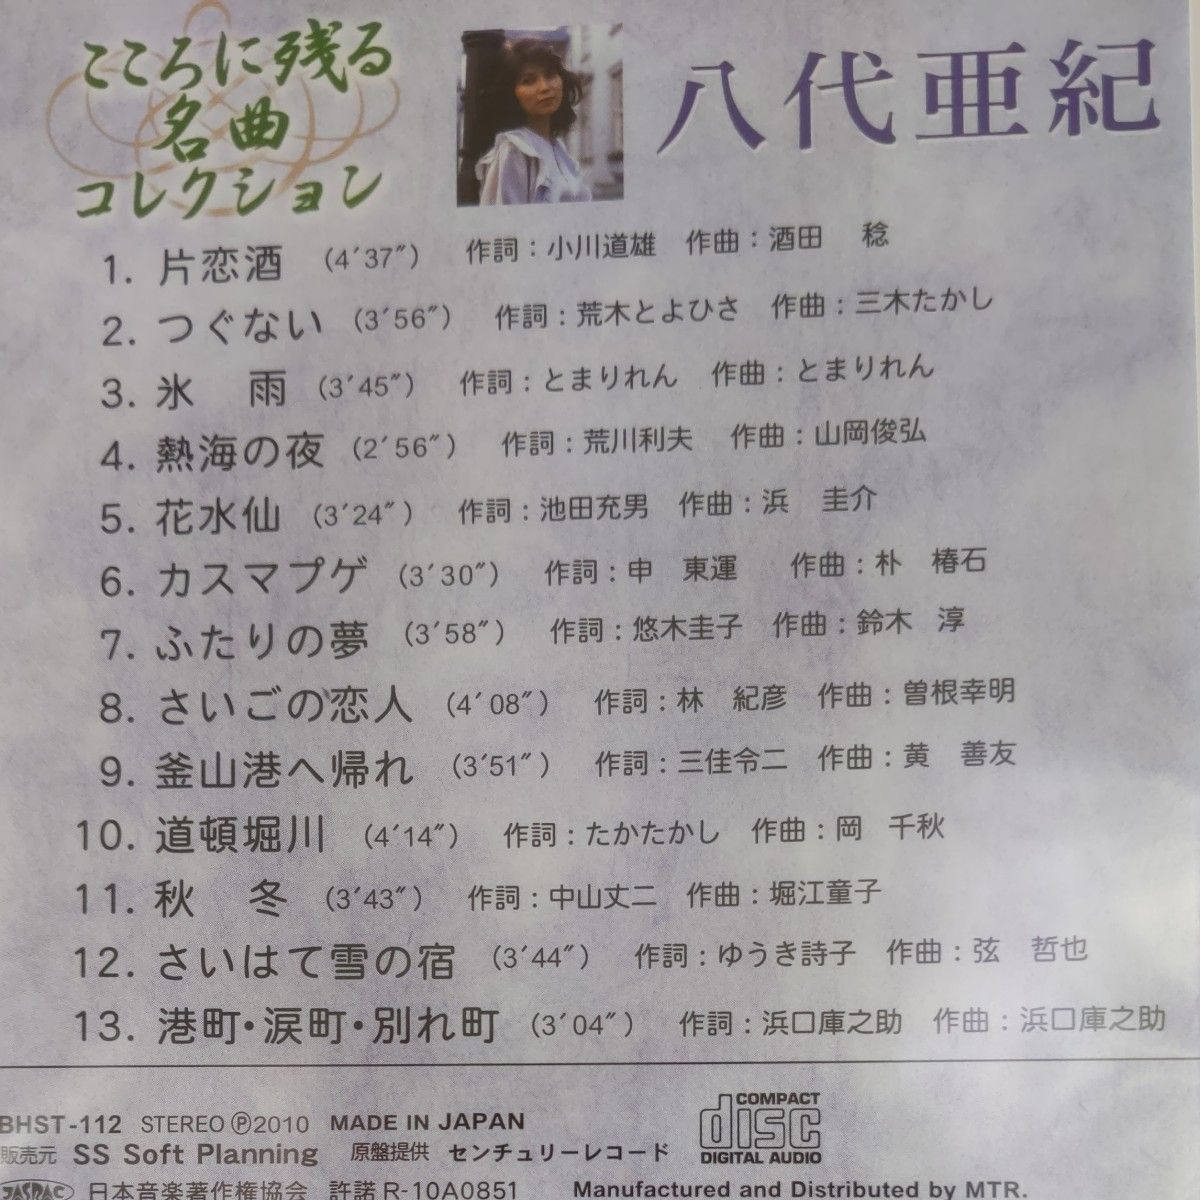 八代亜紀 こころに残る名曲コレクション (CD)　新品未開封